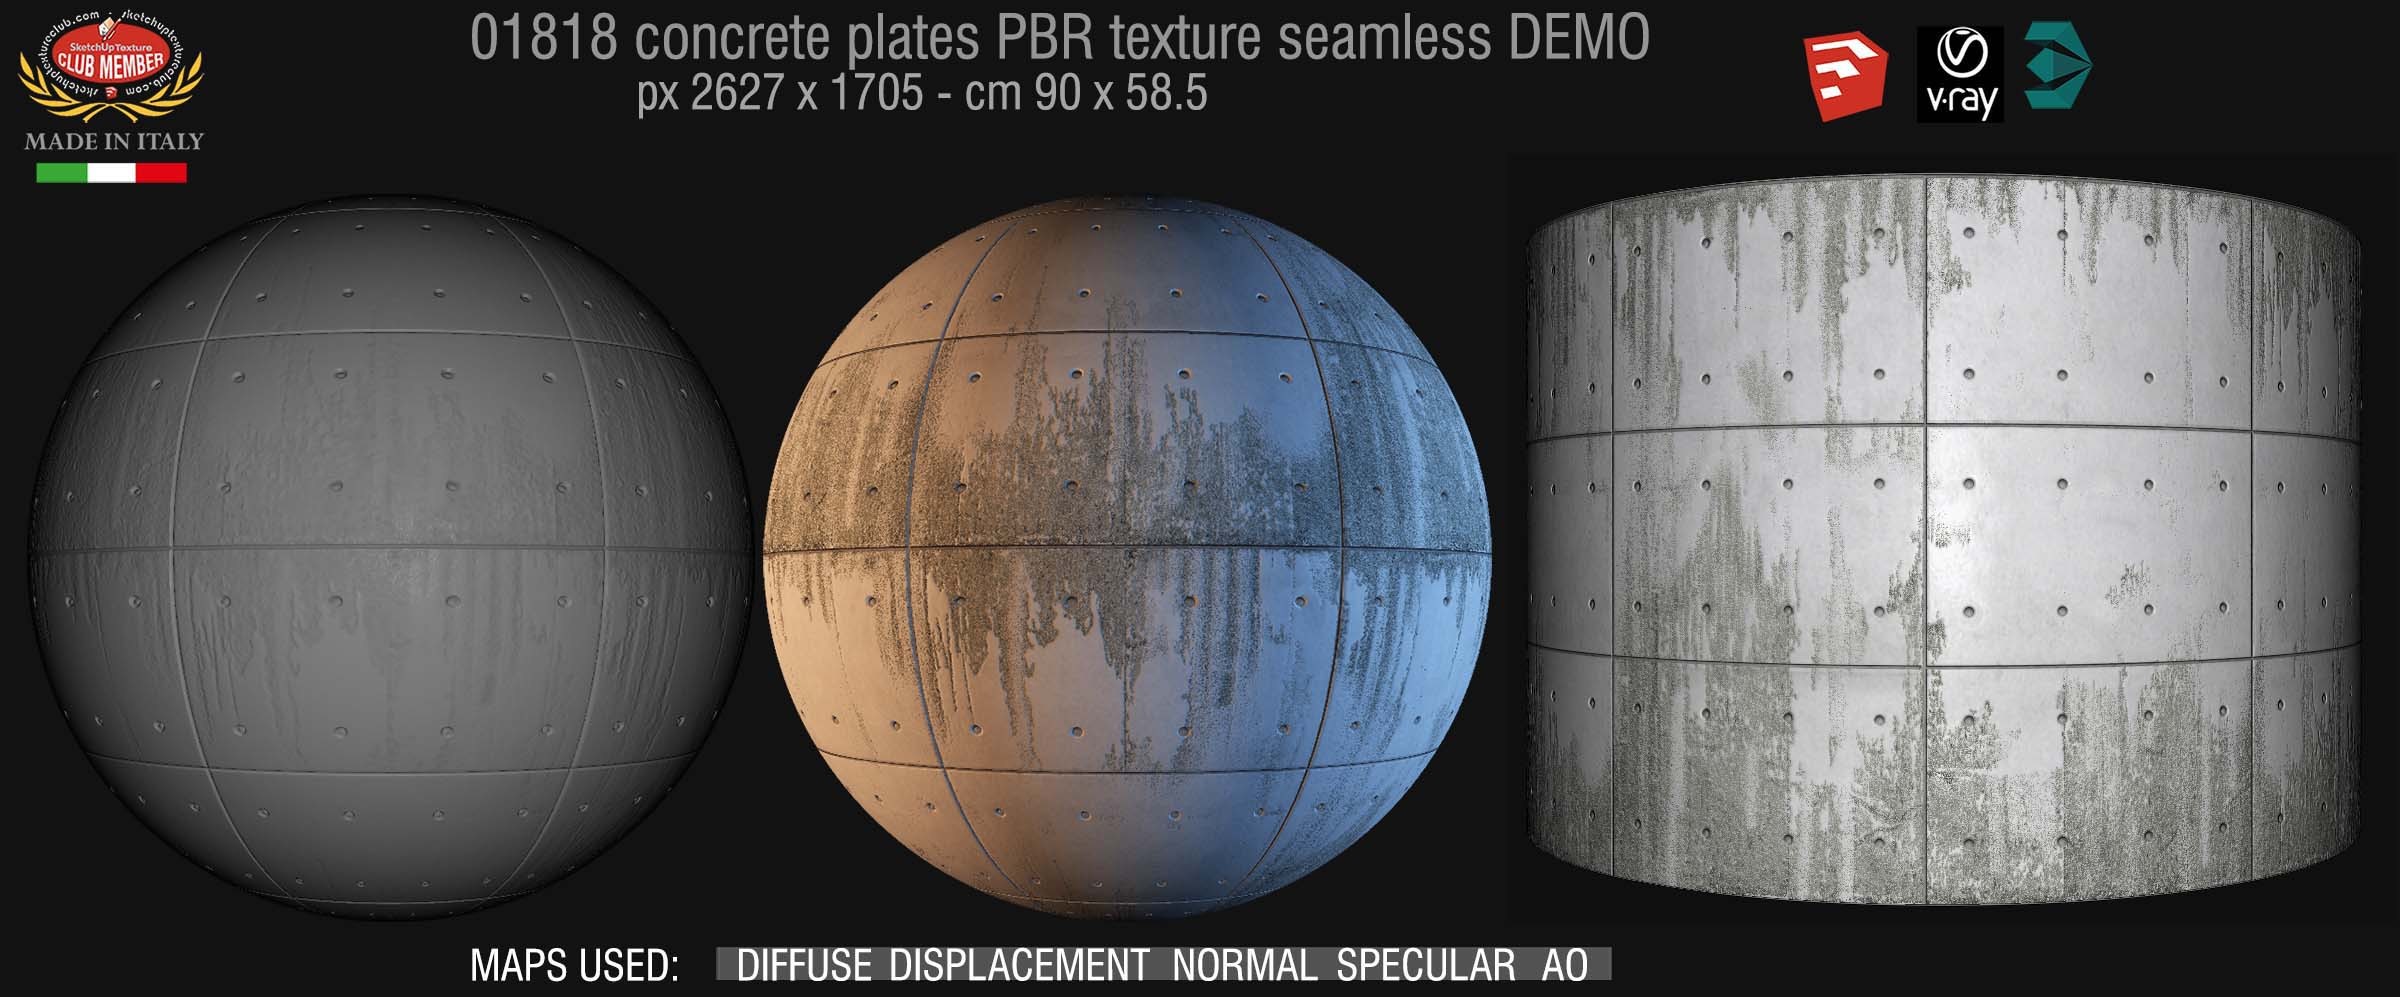 01818 Tadao Ando concrete plates PBR texture seamless DEMO